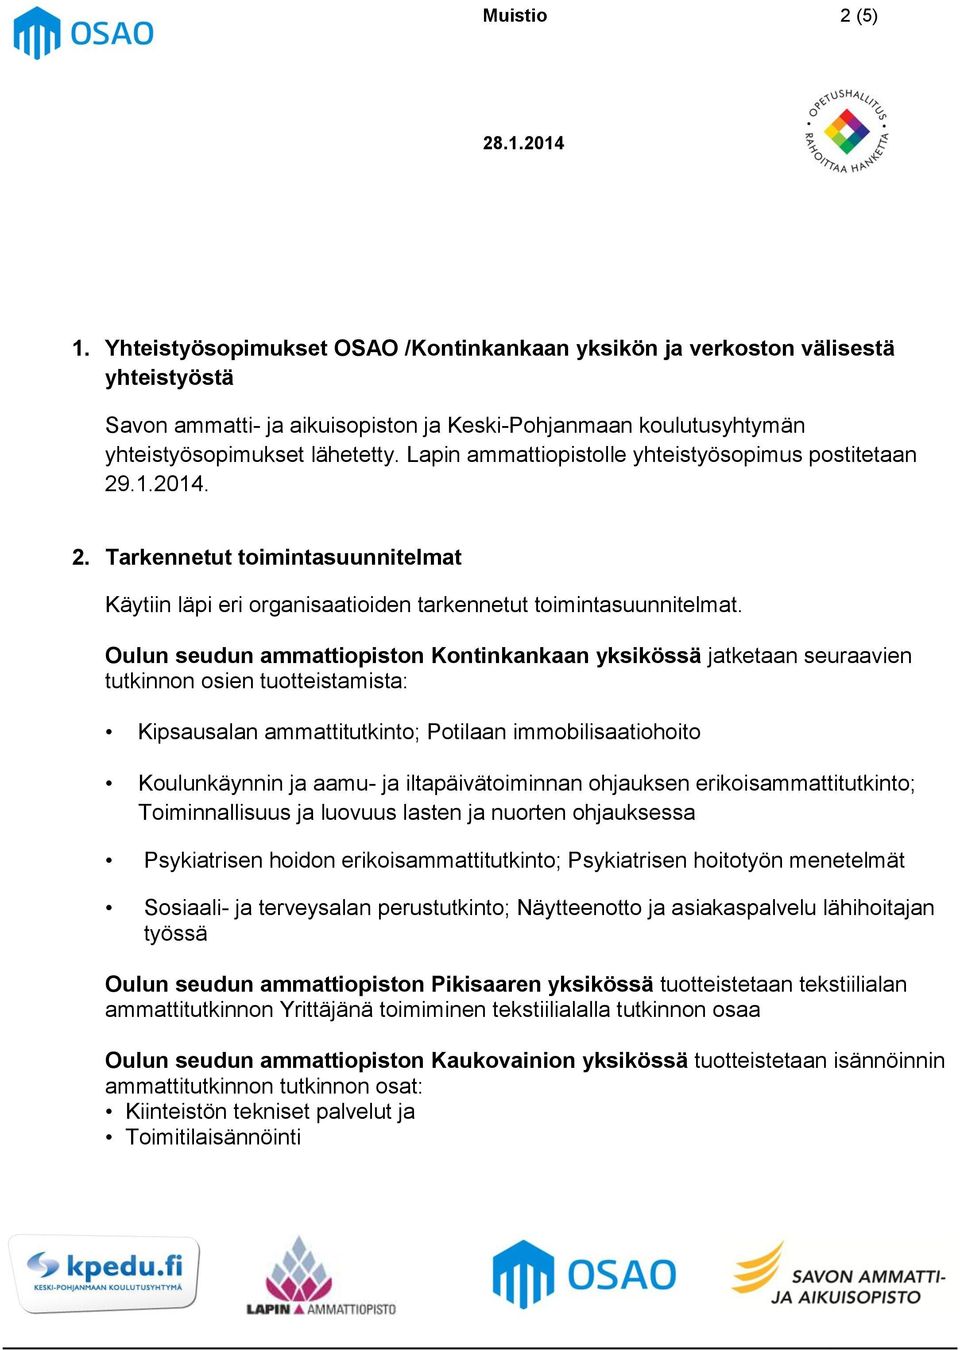 Oulun seudun ammattiopiston Kontinkankaan yksikössä jatketaan seuraavien tutkinnon osien tuotteistamista: Kipsausalan ammattitutkinto; Potilaan immobilisaatiohoito Koulunkäynnin ja aamu- ja